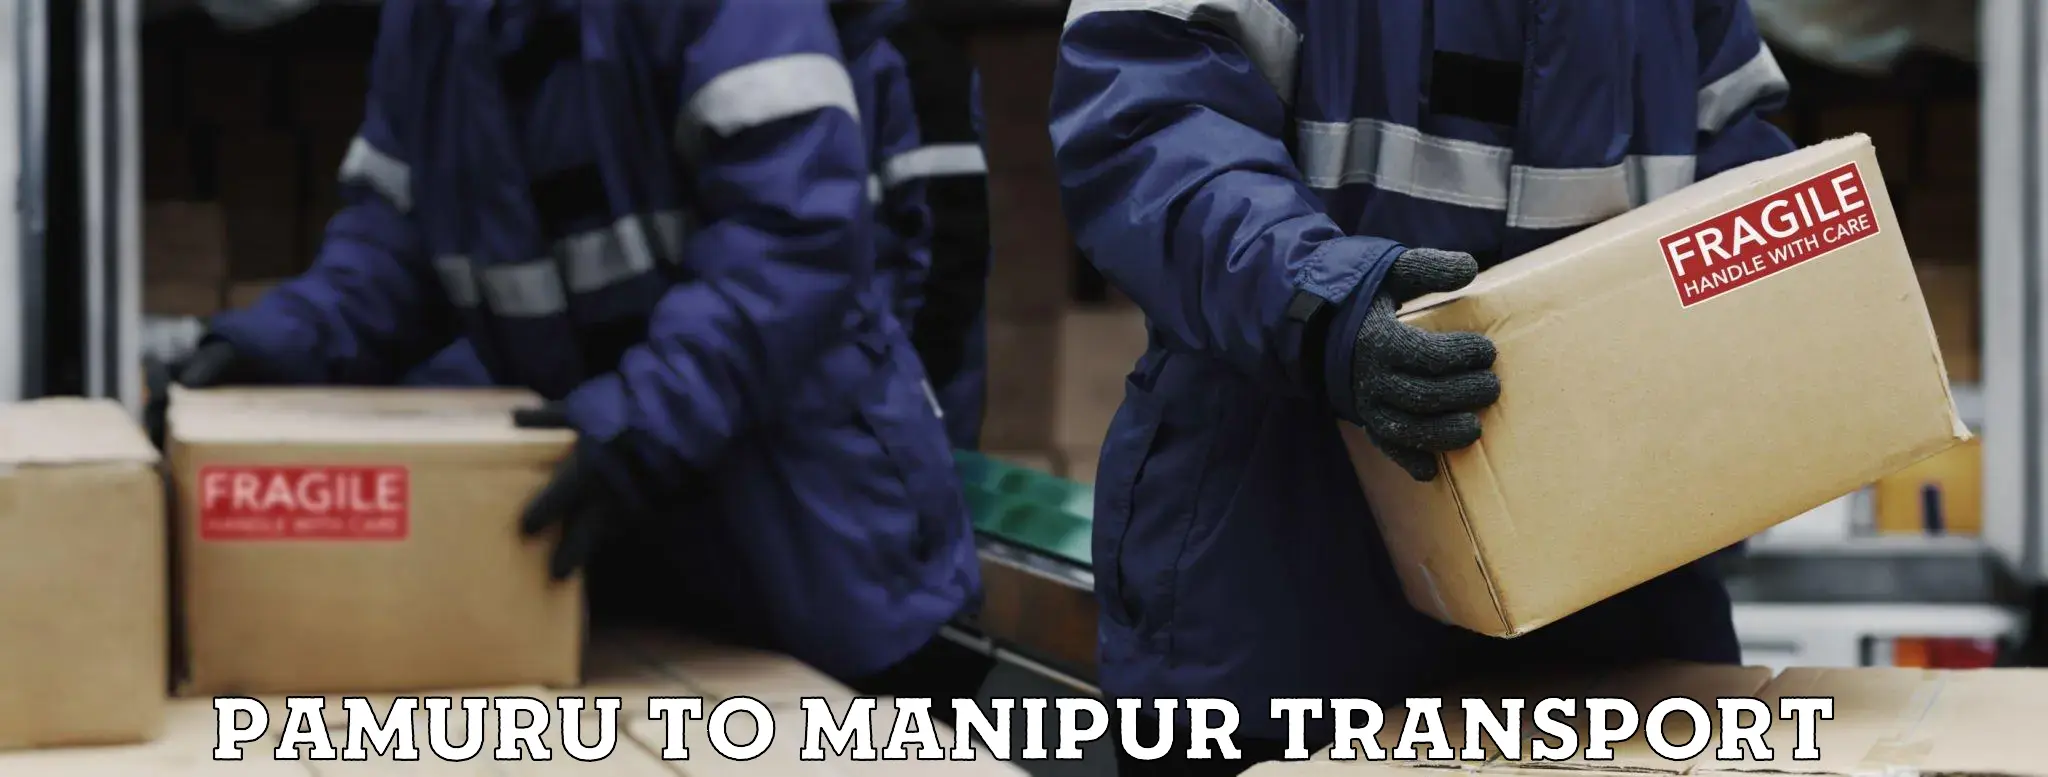 Luggage transport services Pamuru to Manipur